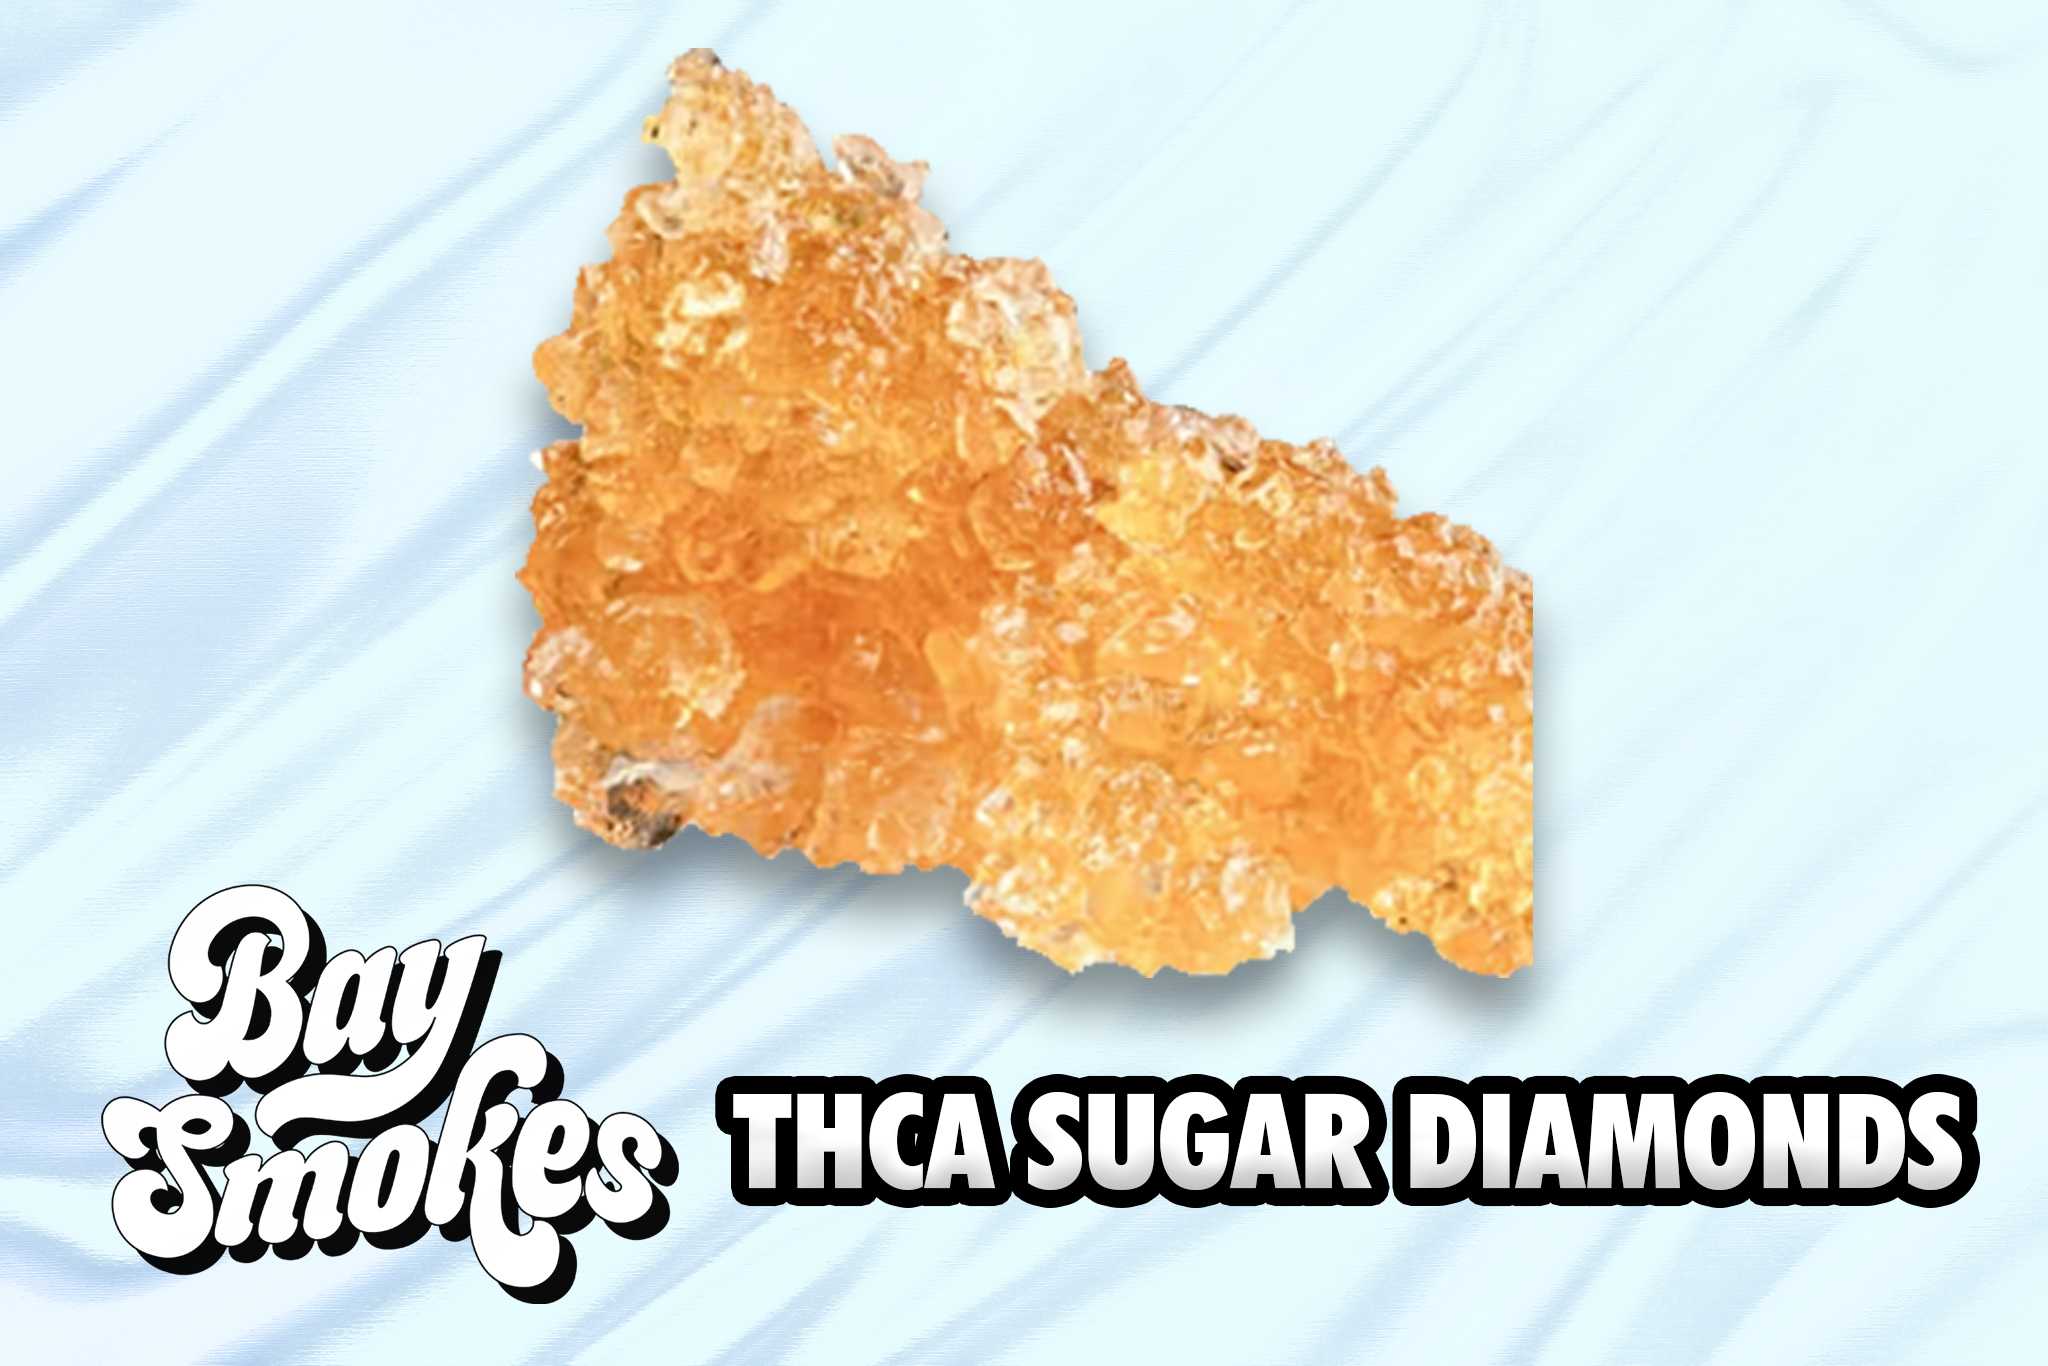 THCA Sugar Diamonds